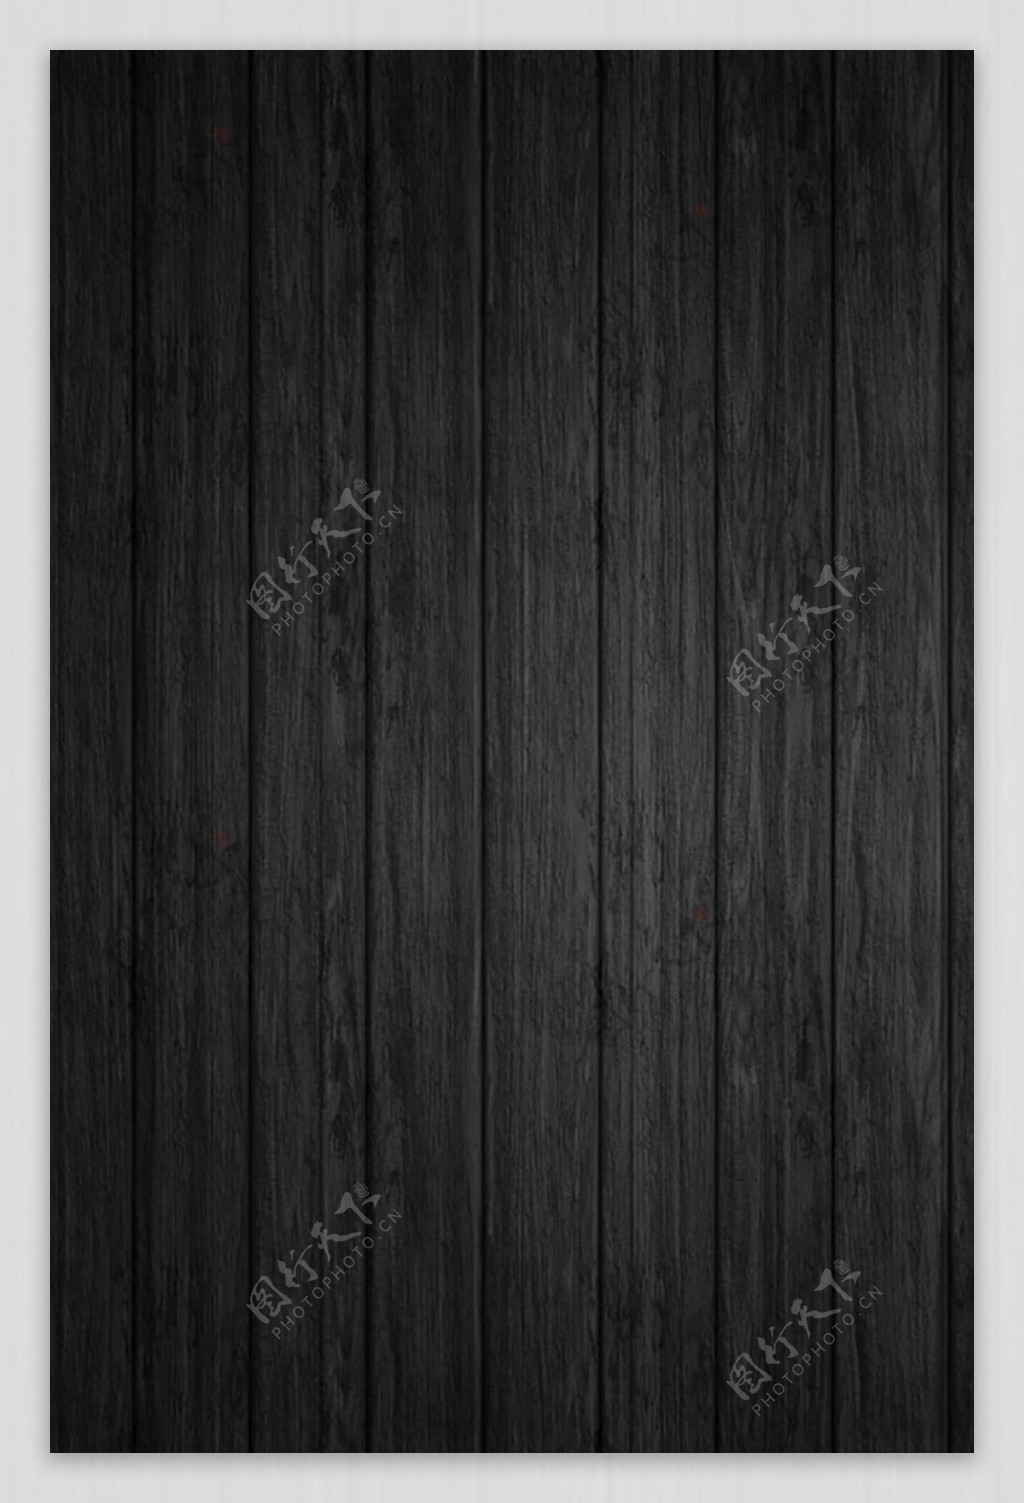 黑色木质木纹图片